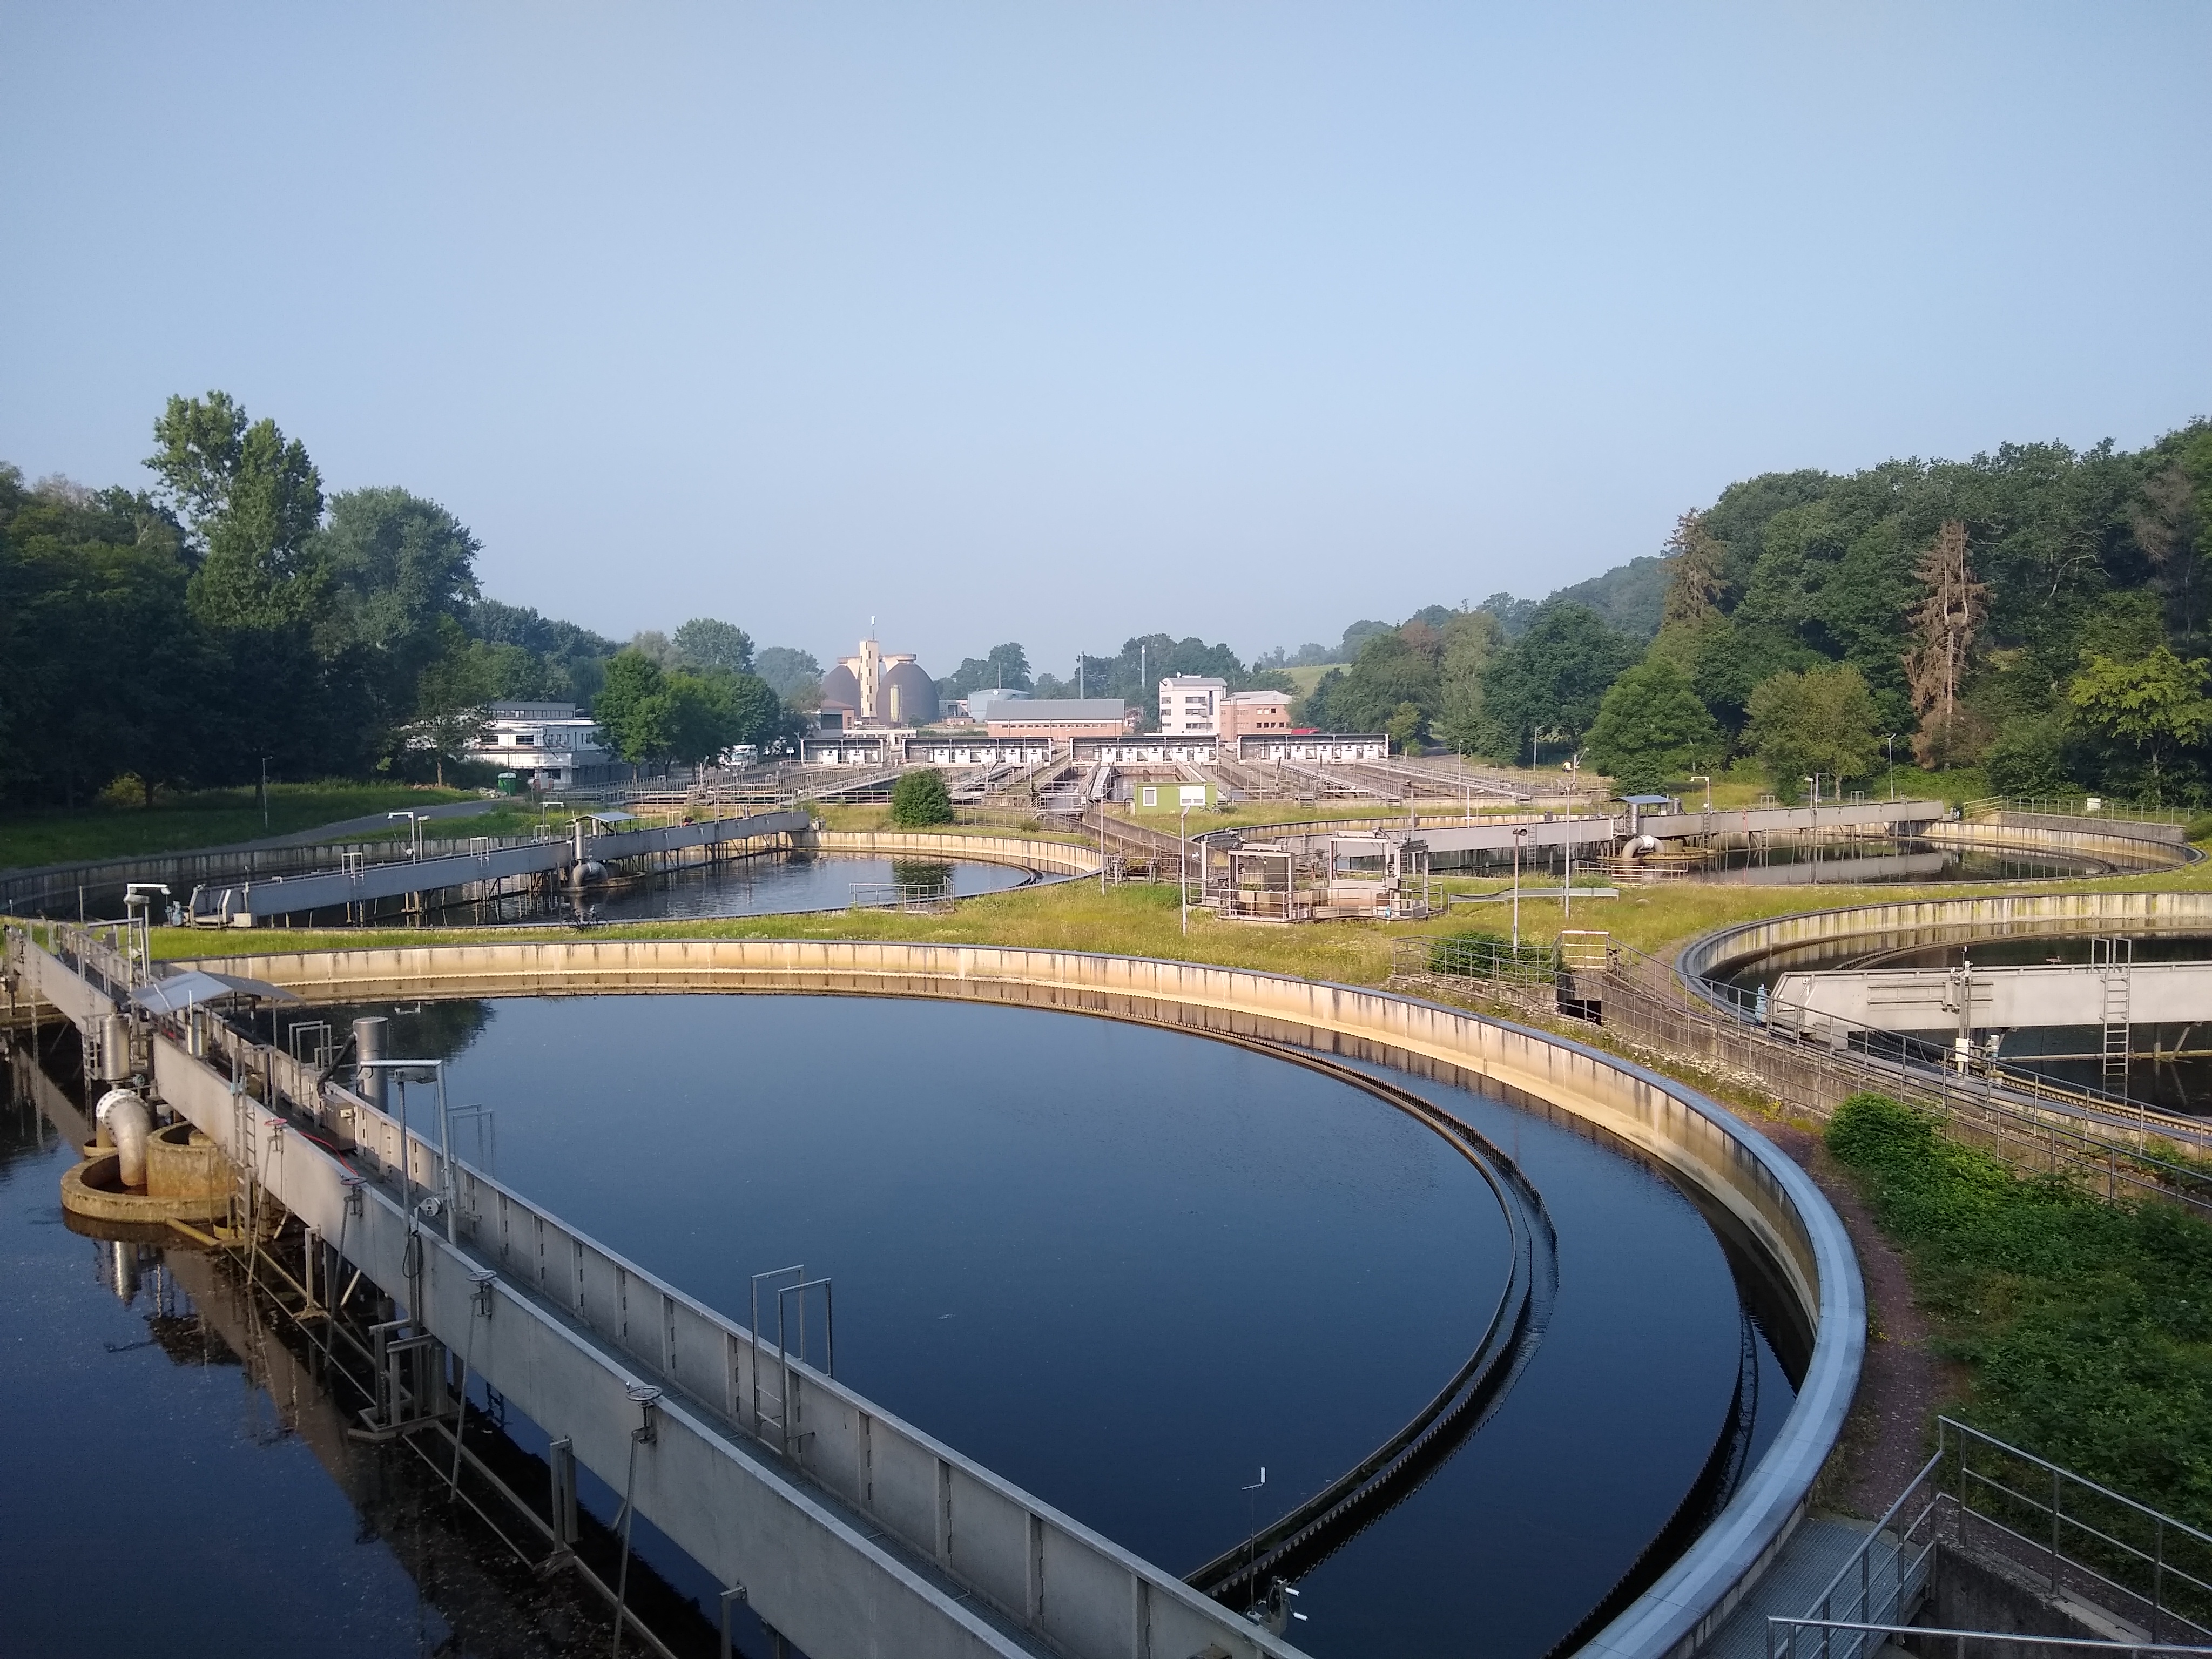 Aachen-Soers waste water treatment plant